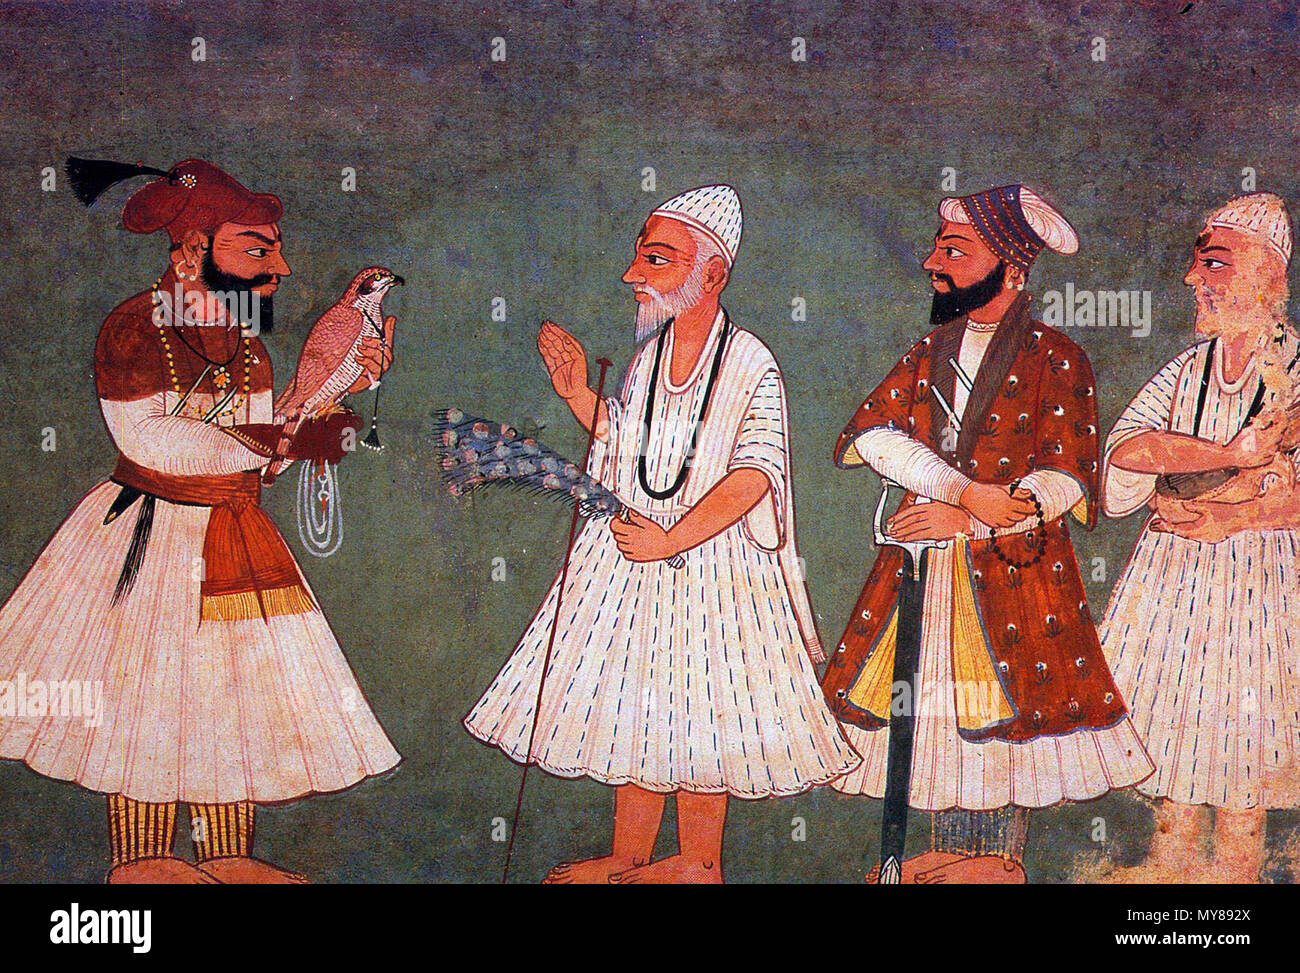 . Guru Gobind Singh (oiseau) rencontre avec le gourou Nanak Dev. Une peinture du 18ème siècle d'une réunion imaginaire. 18e siècle. Inconnu 223 Guru Gobind Singh répond à Guru Nanak Dev Banque D'Images